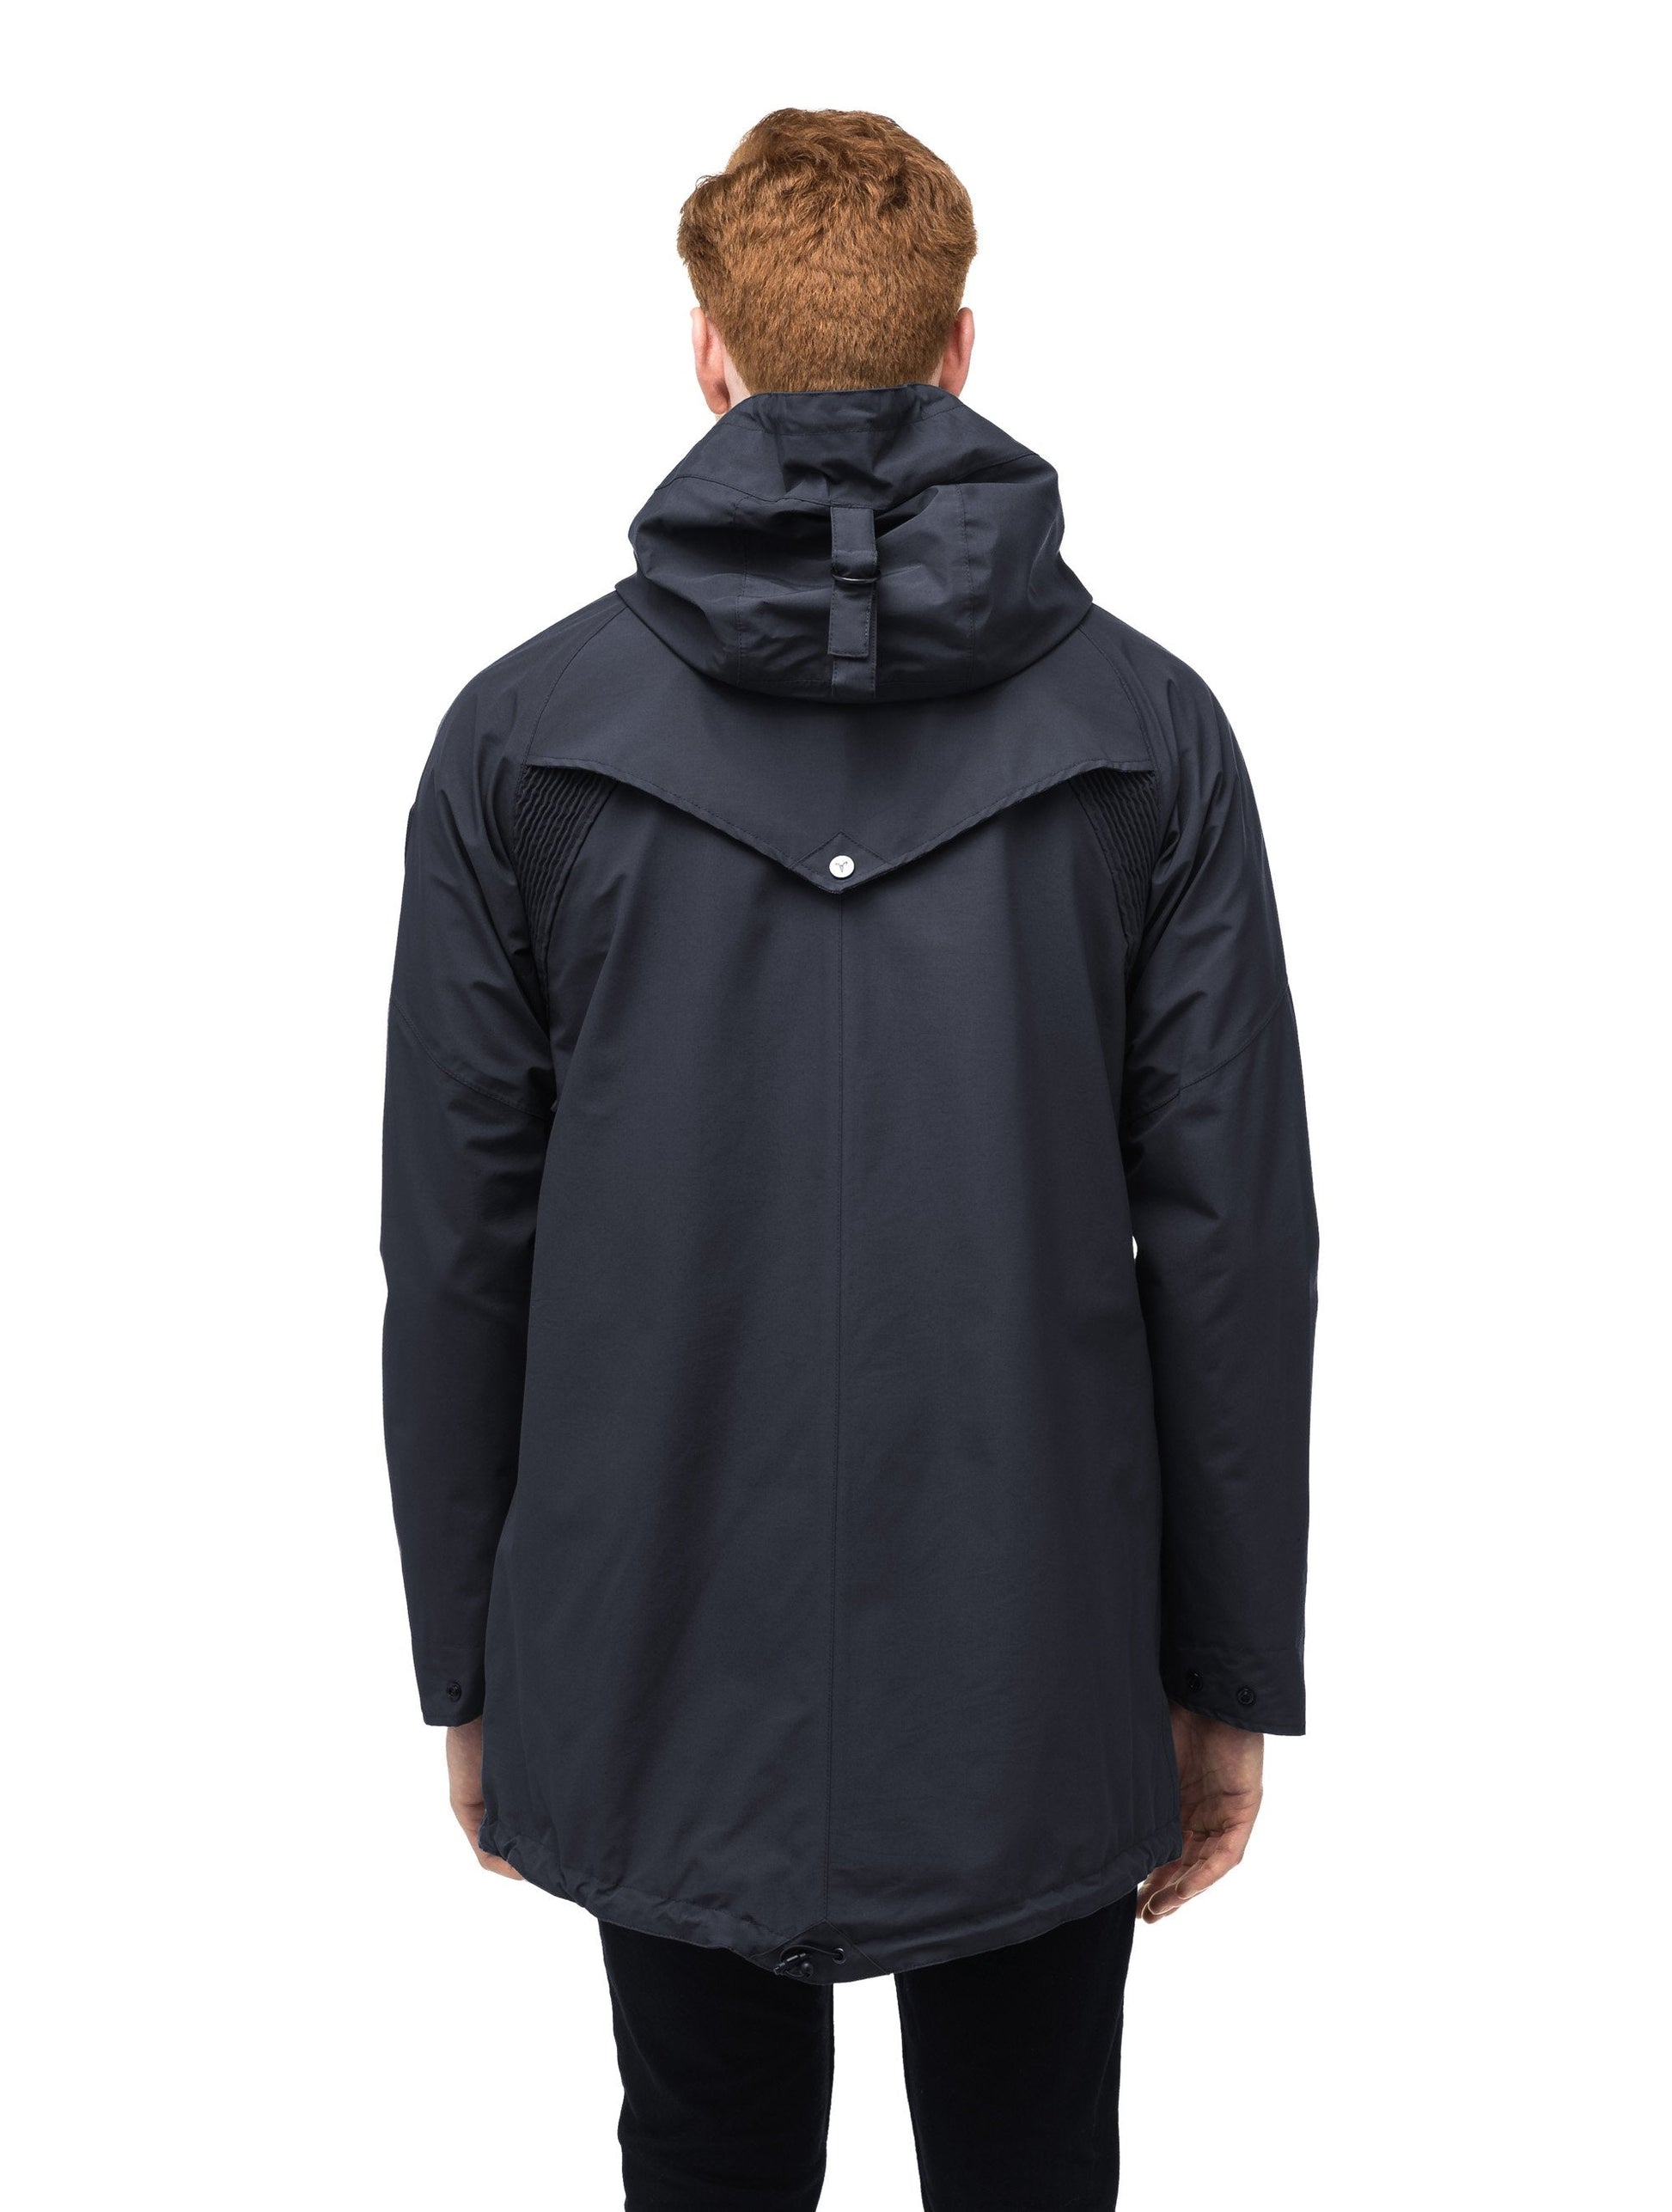 Men's hooded rain coat with hood in Navy